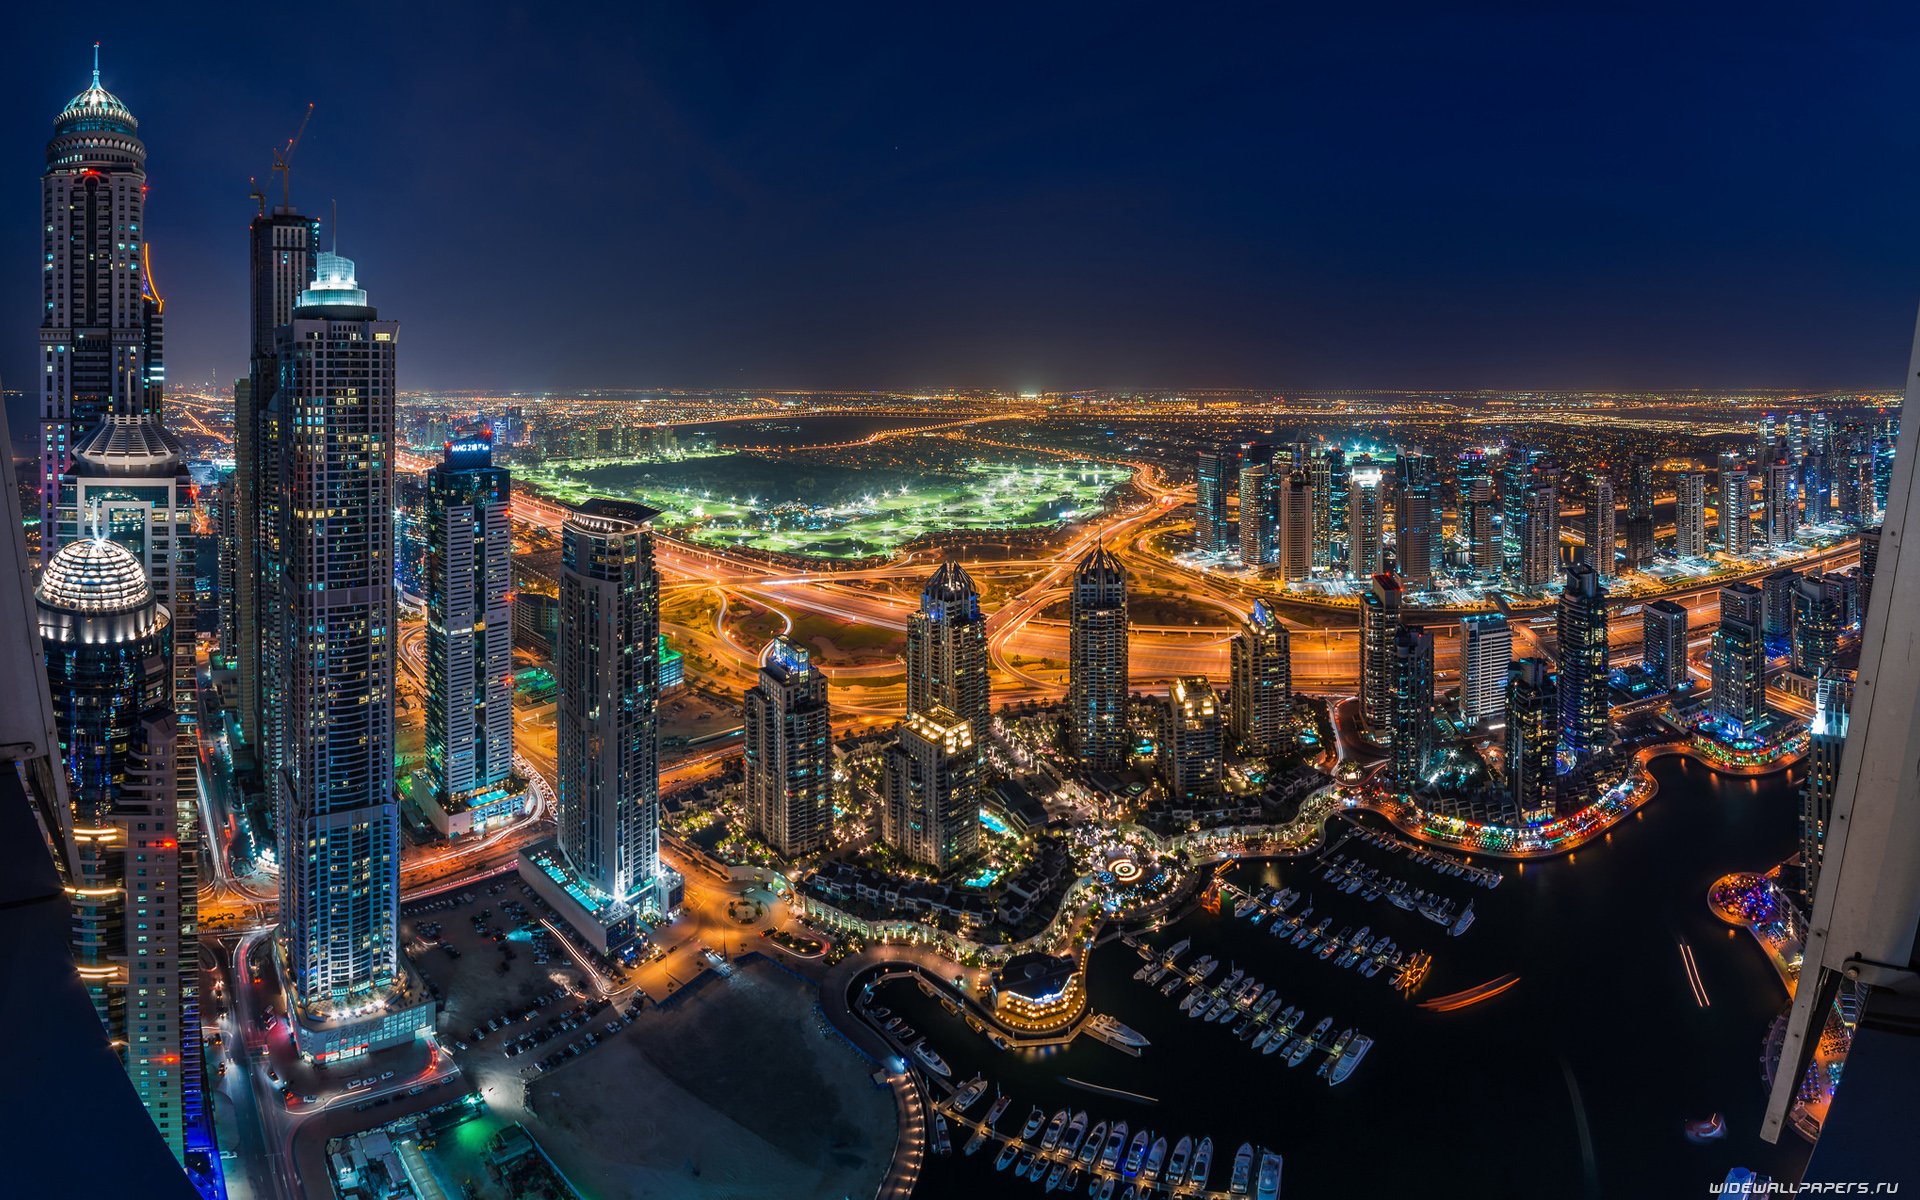 Дубай Марина панорама